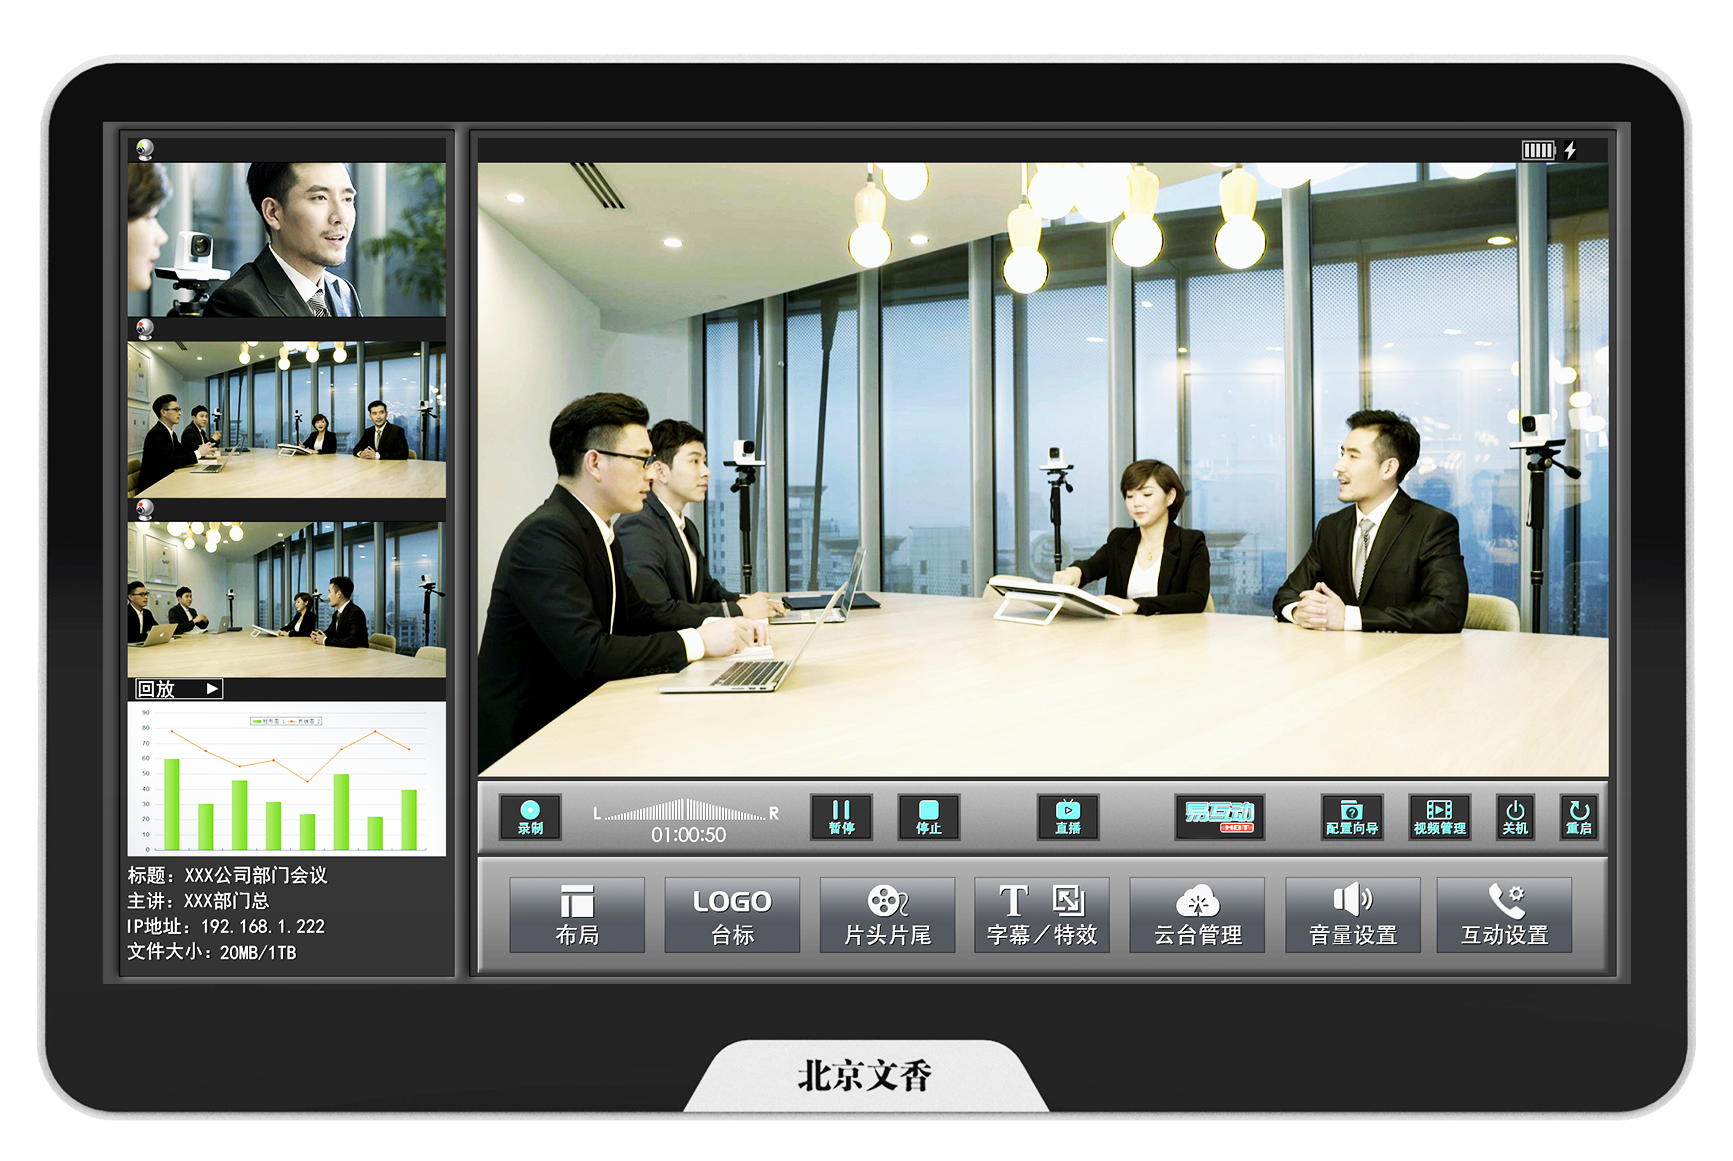 全自动高清录播主机(6+3) - 广州市昇博电子科技有限公司